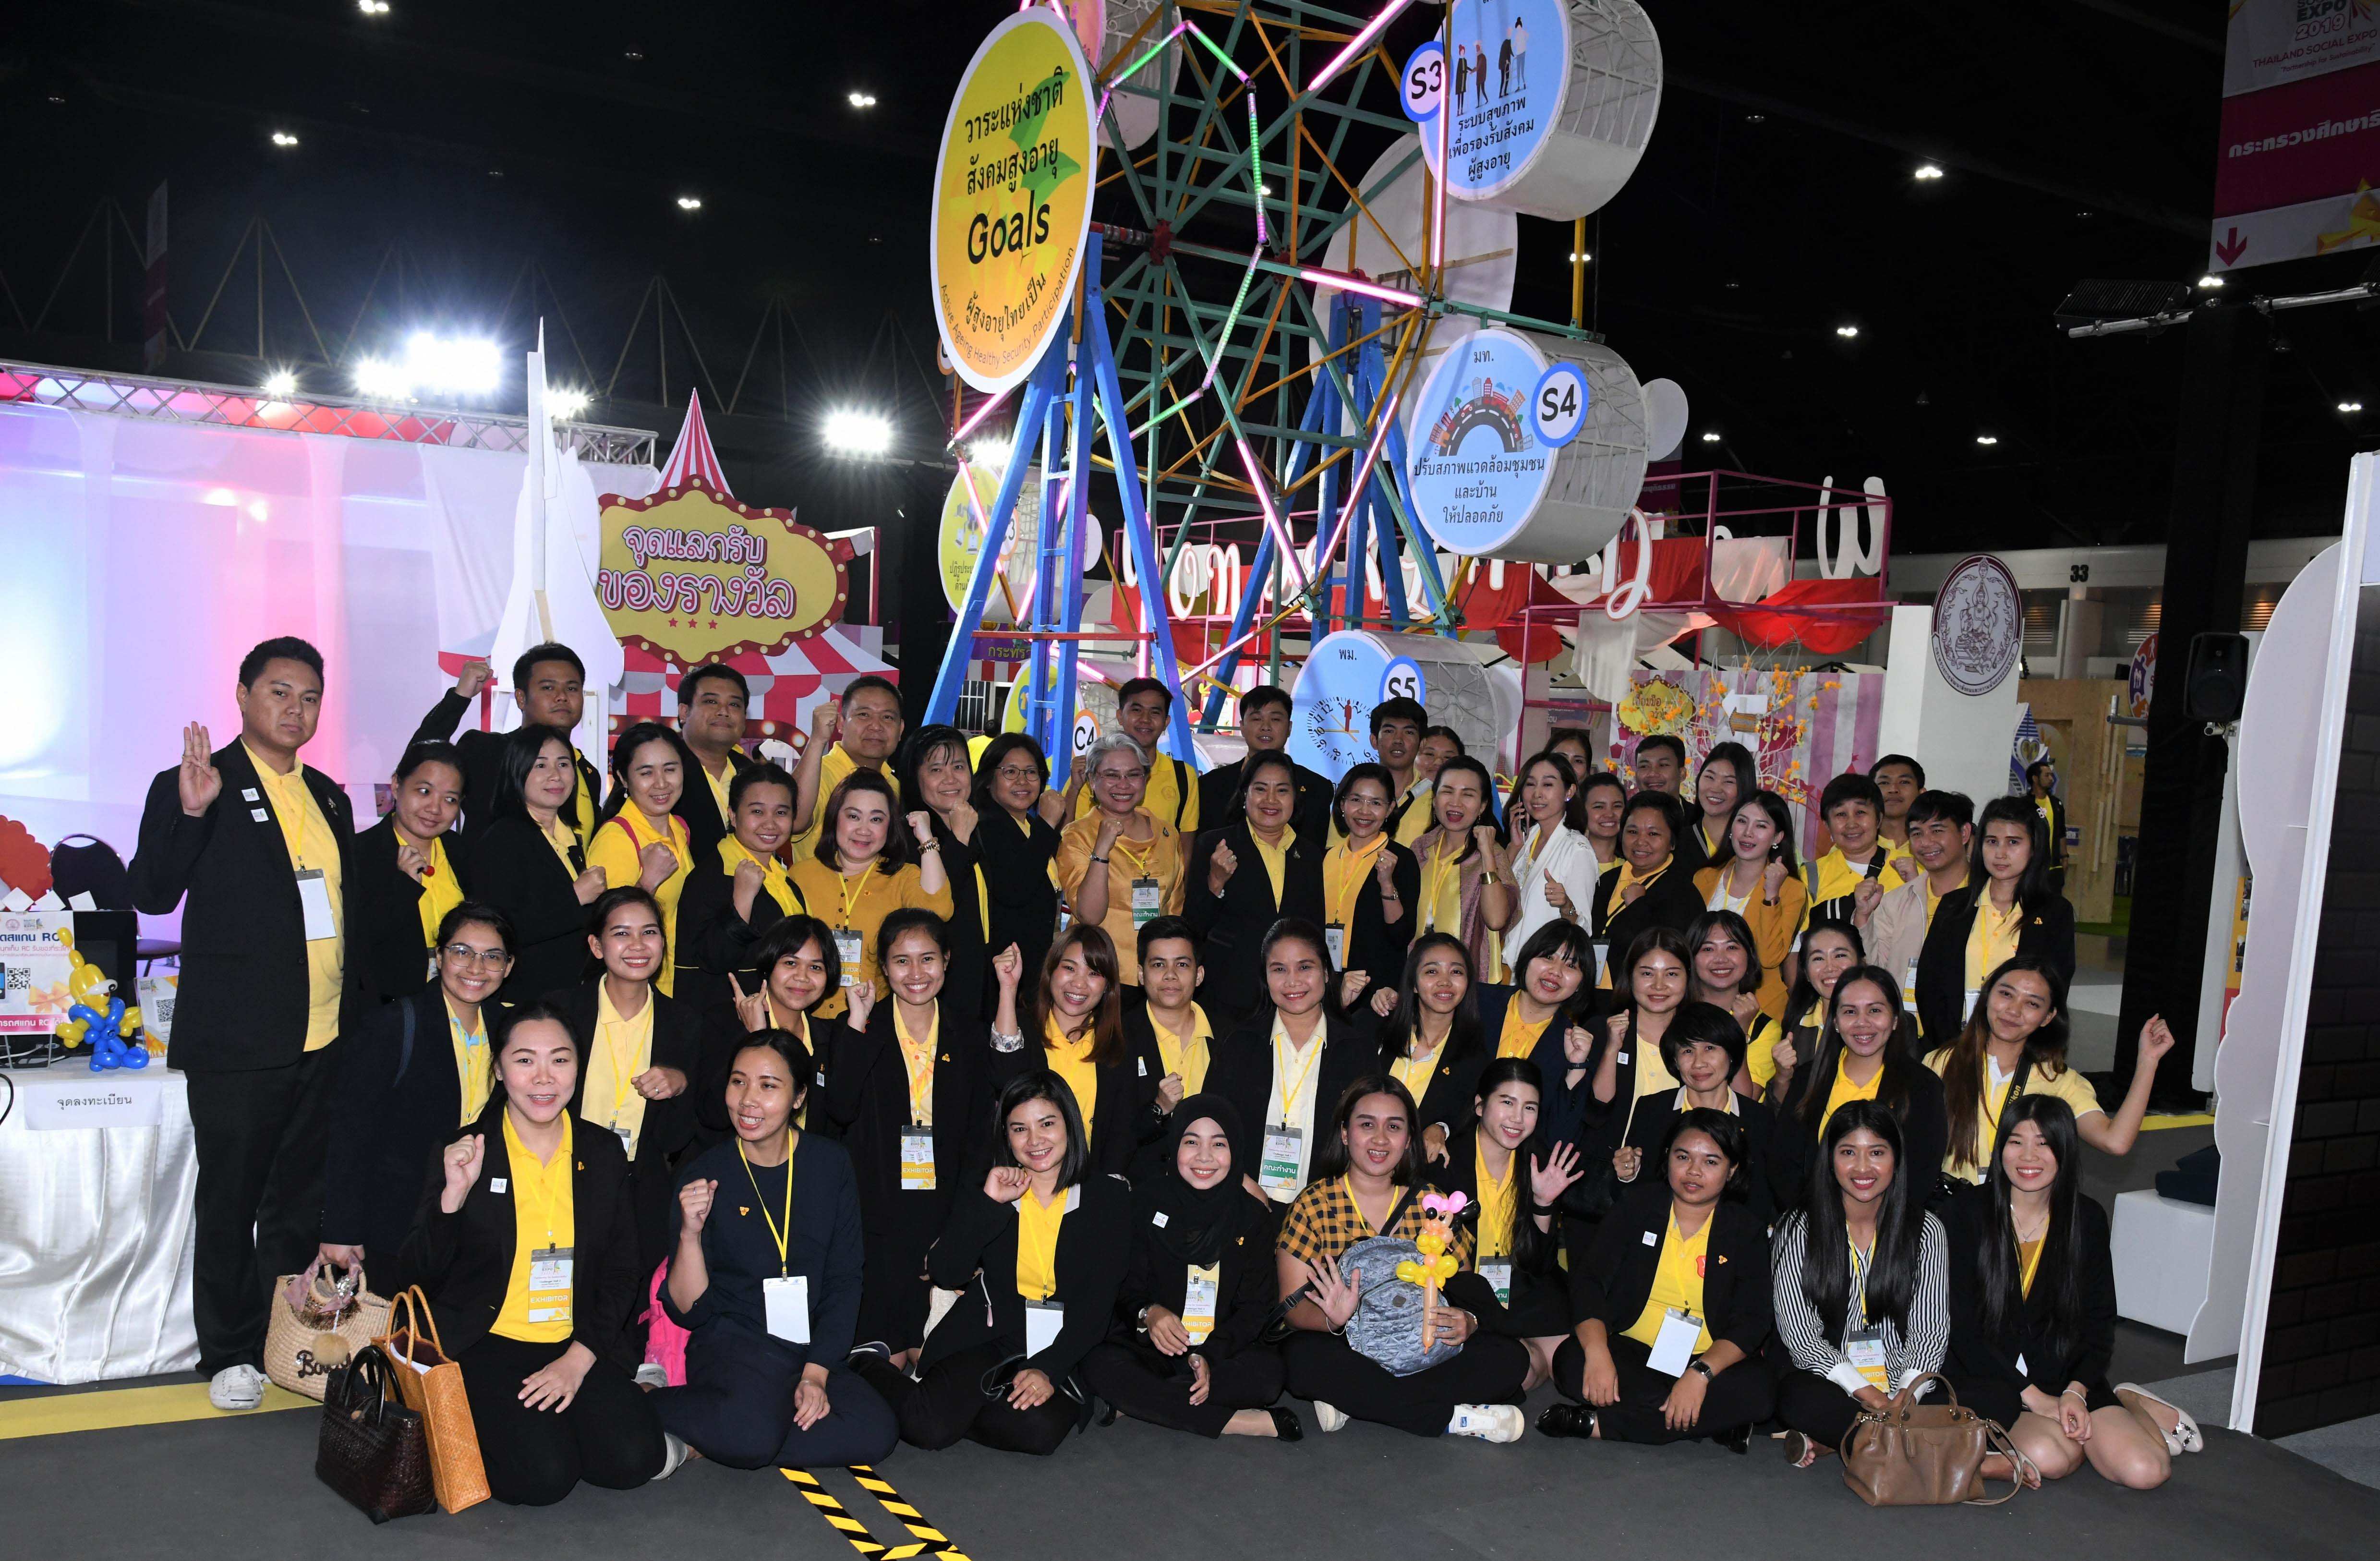 ชาว ผส.  ร่วมดำเนินการจัดกิจกรรมภายในงาน Thailand Social Expo 2019 